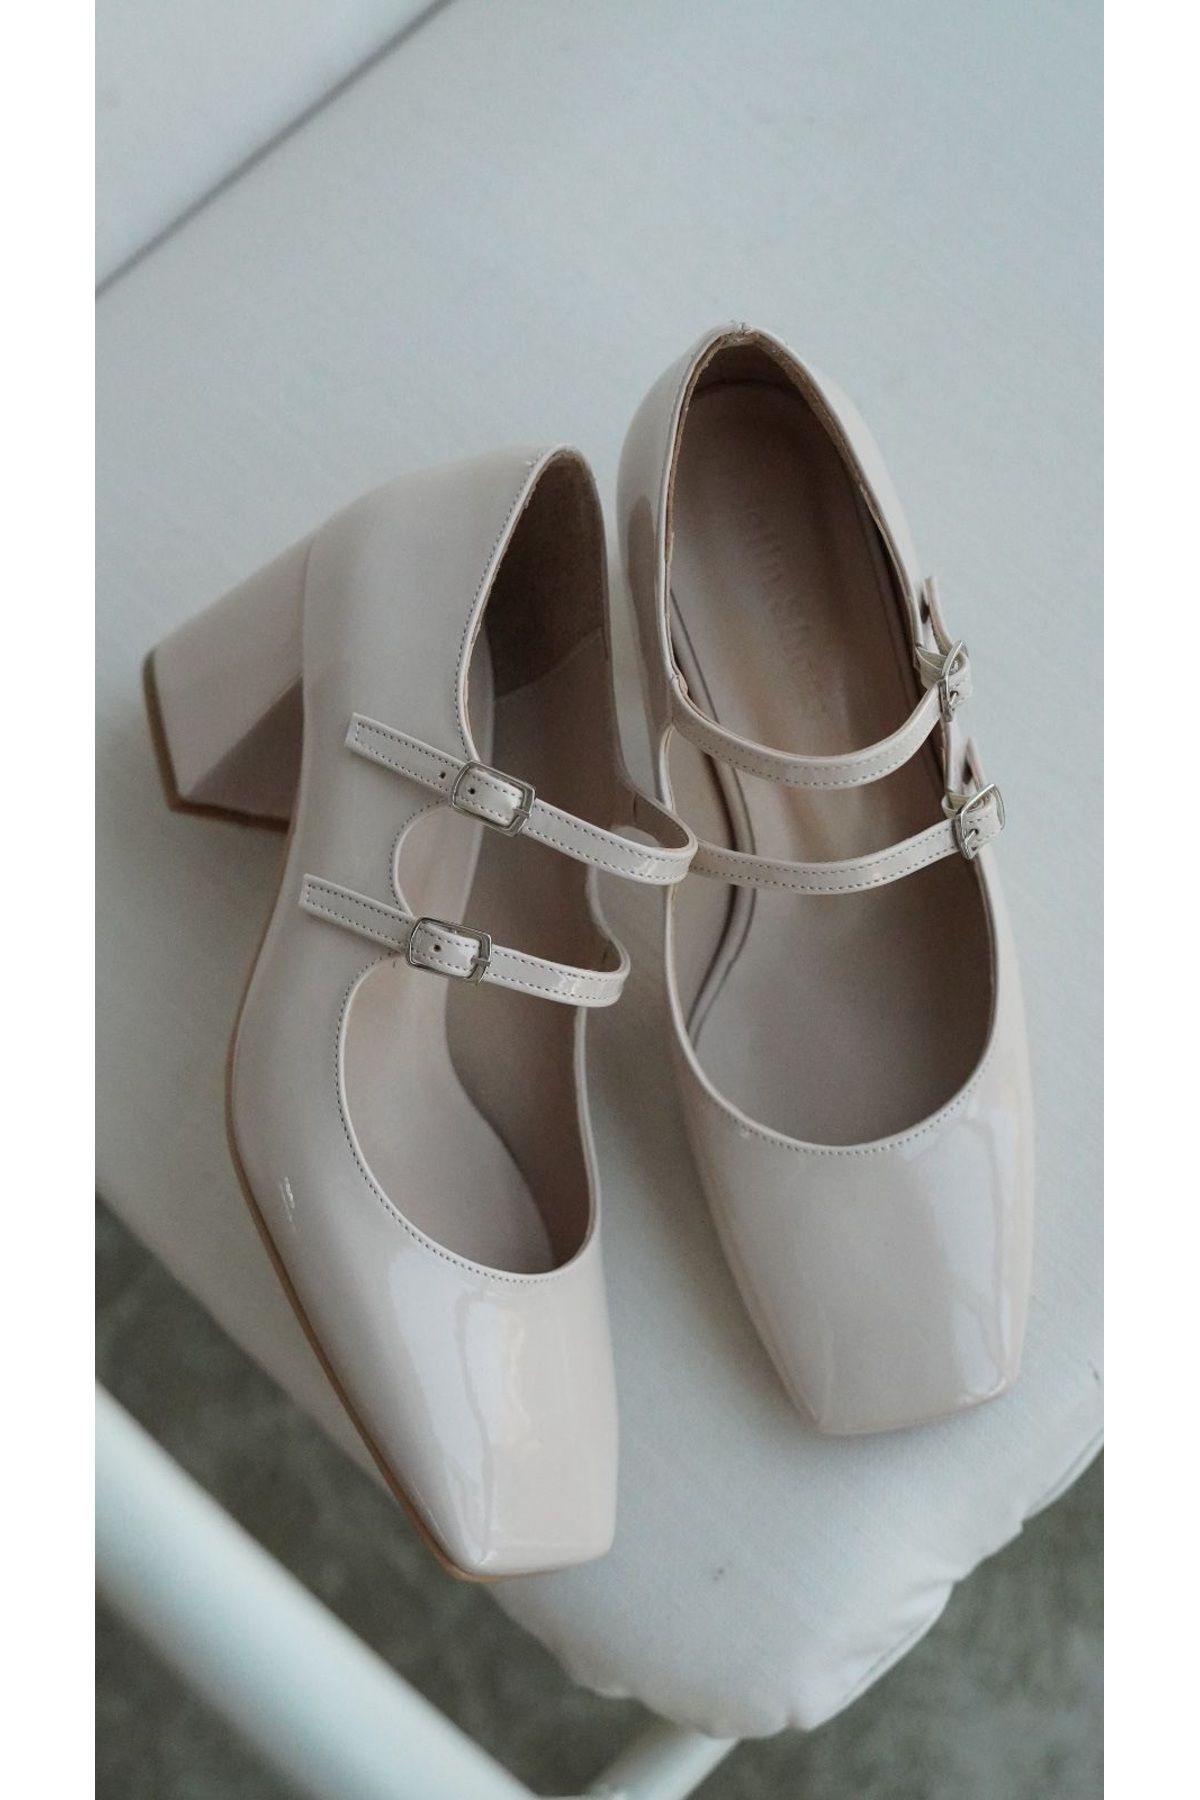 selinshoes Dakota Çift Toka Detaylı Küt Burunlu Kadın Topuklu Ayakkabı - EKRU RUGAN